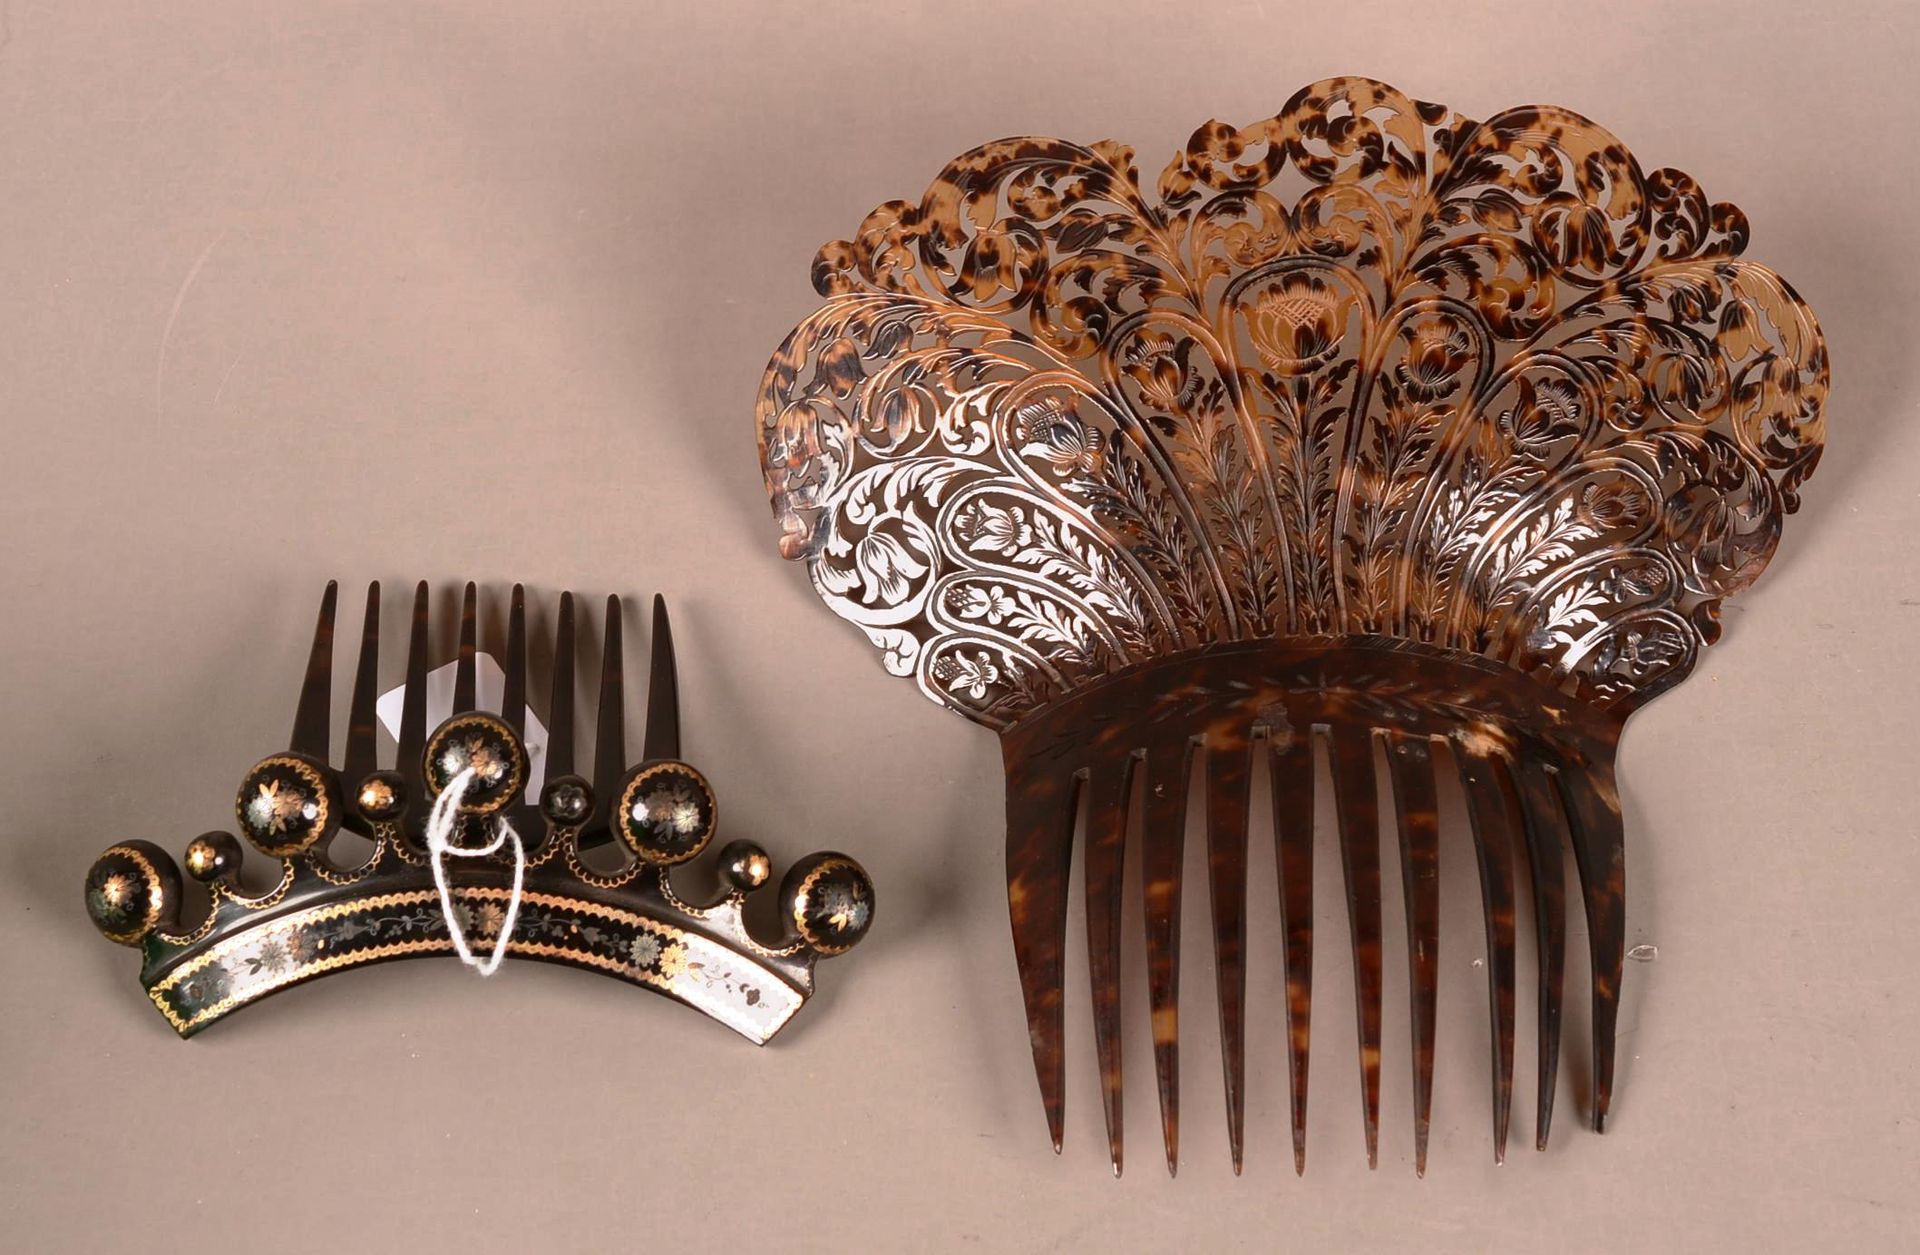 Coiffe et peigne pour cheveux 镂空漆器的头饰和梳子，上面有叶子和冠状的应用图案。(小缺)